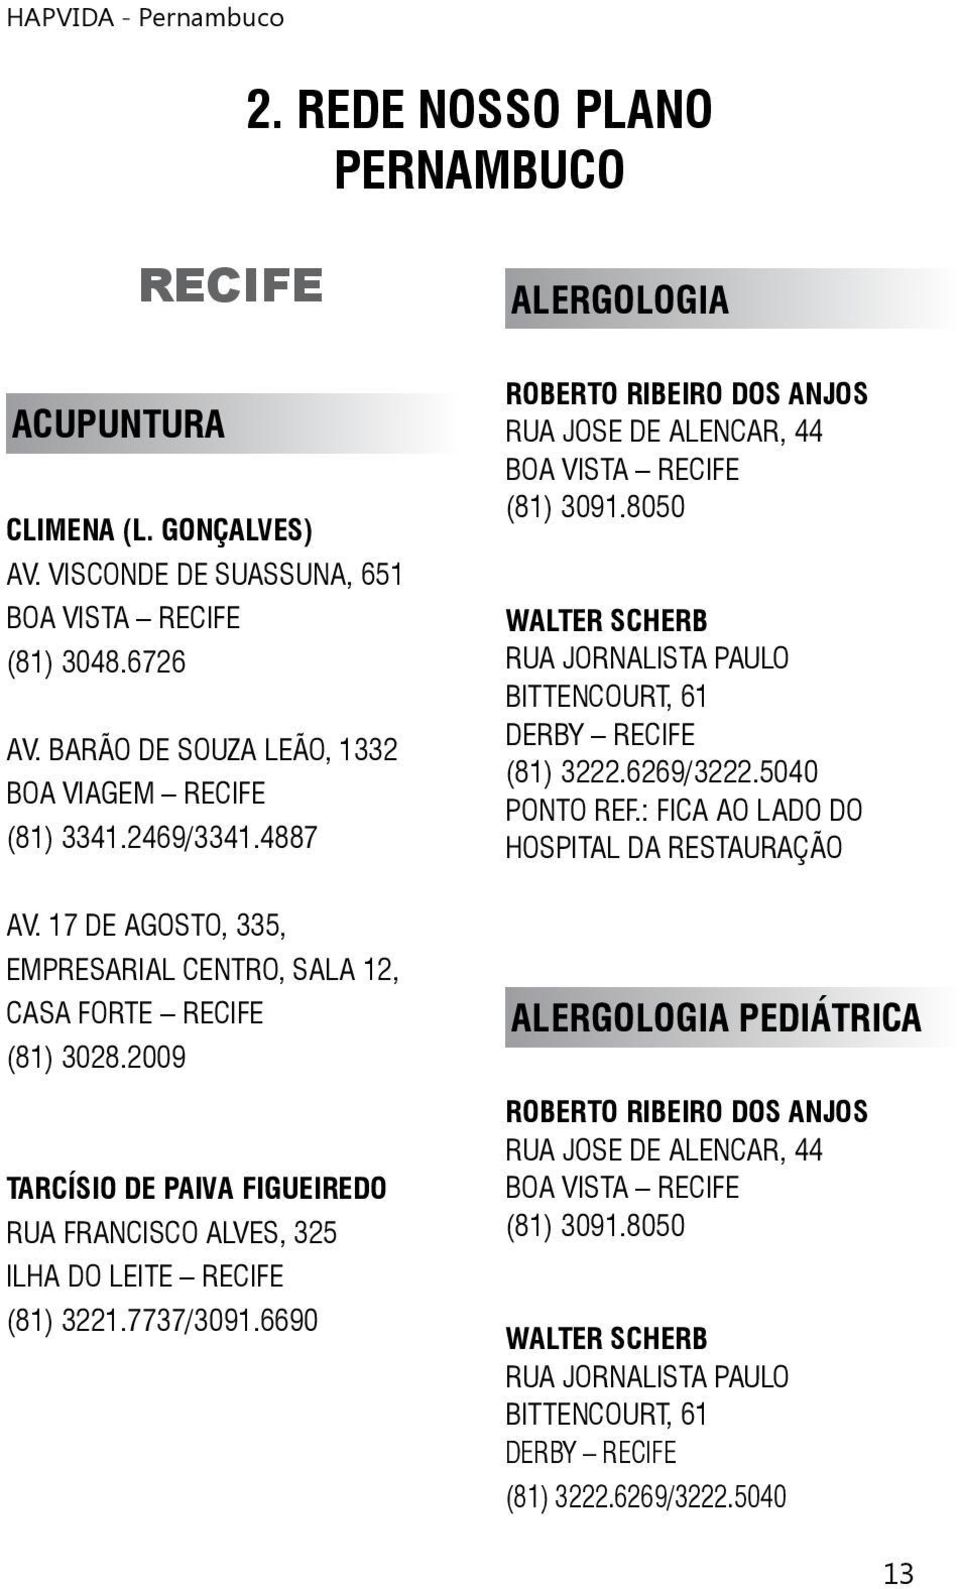 6690 ALERGOLOGIA ROBERTO RIBEIRO DOS ANJOS RUA JOSE DE ALENCAR, 44 (81) 3091.8050 WALTER SCHERB RUA JORNALISTA PAULO BITTENCOURT, 61 DERBY RECIFE (81) 3222.6269/3222.5040 PONTO REF.